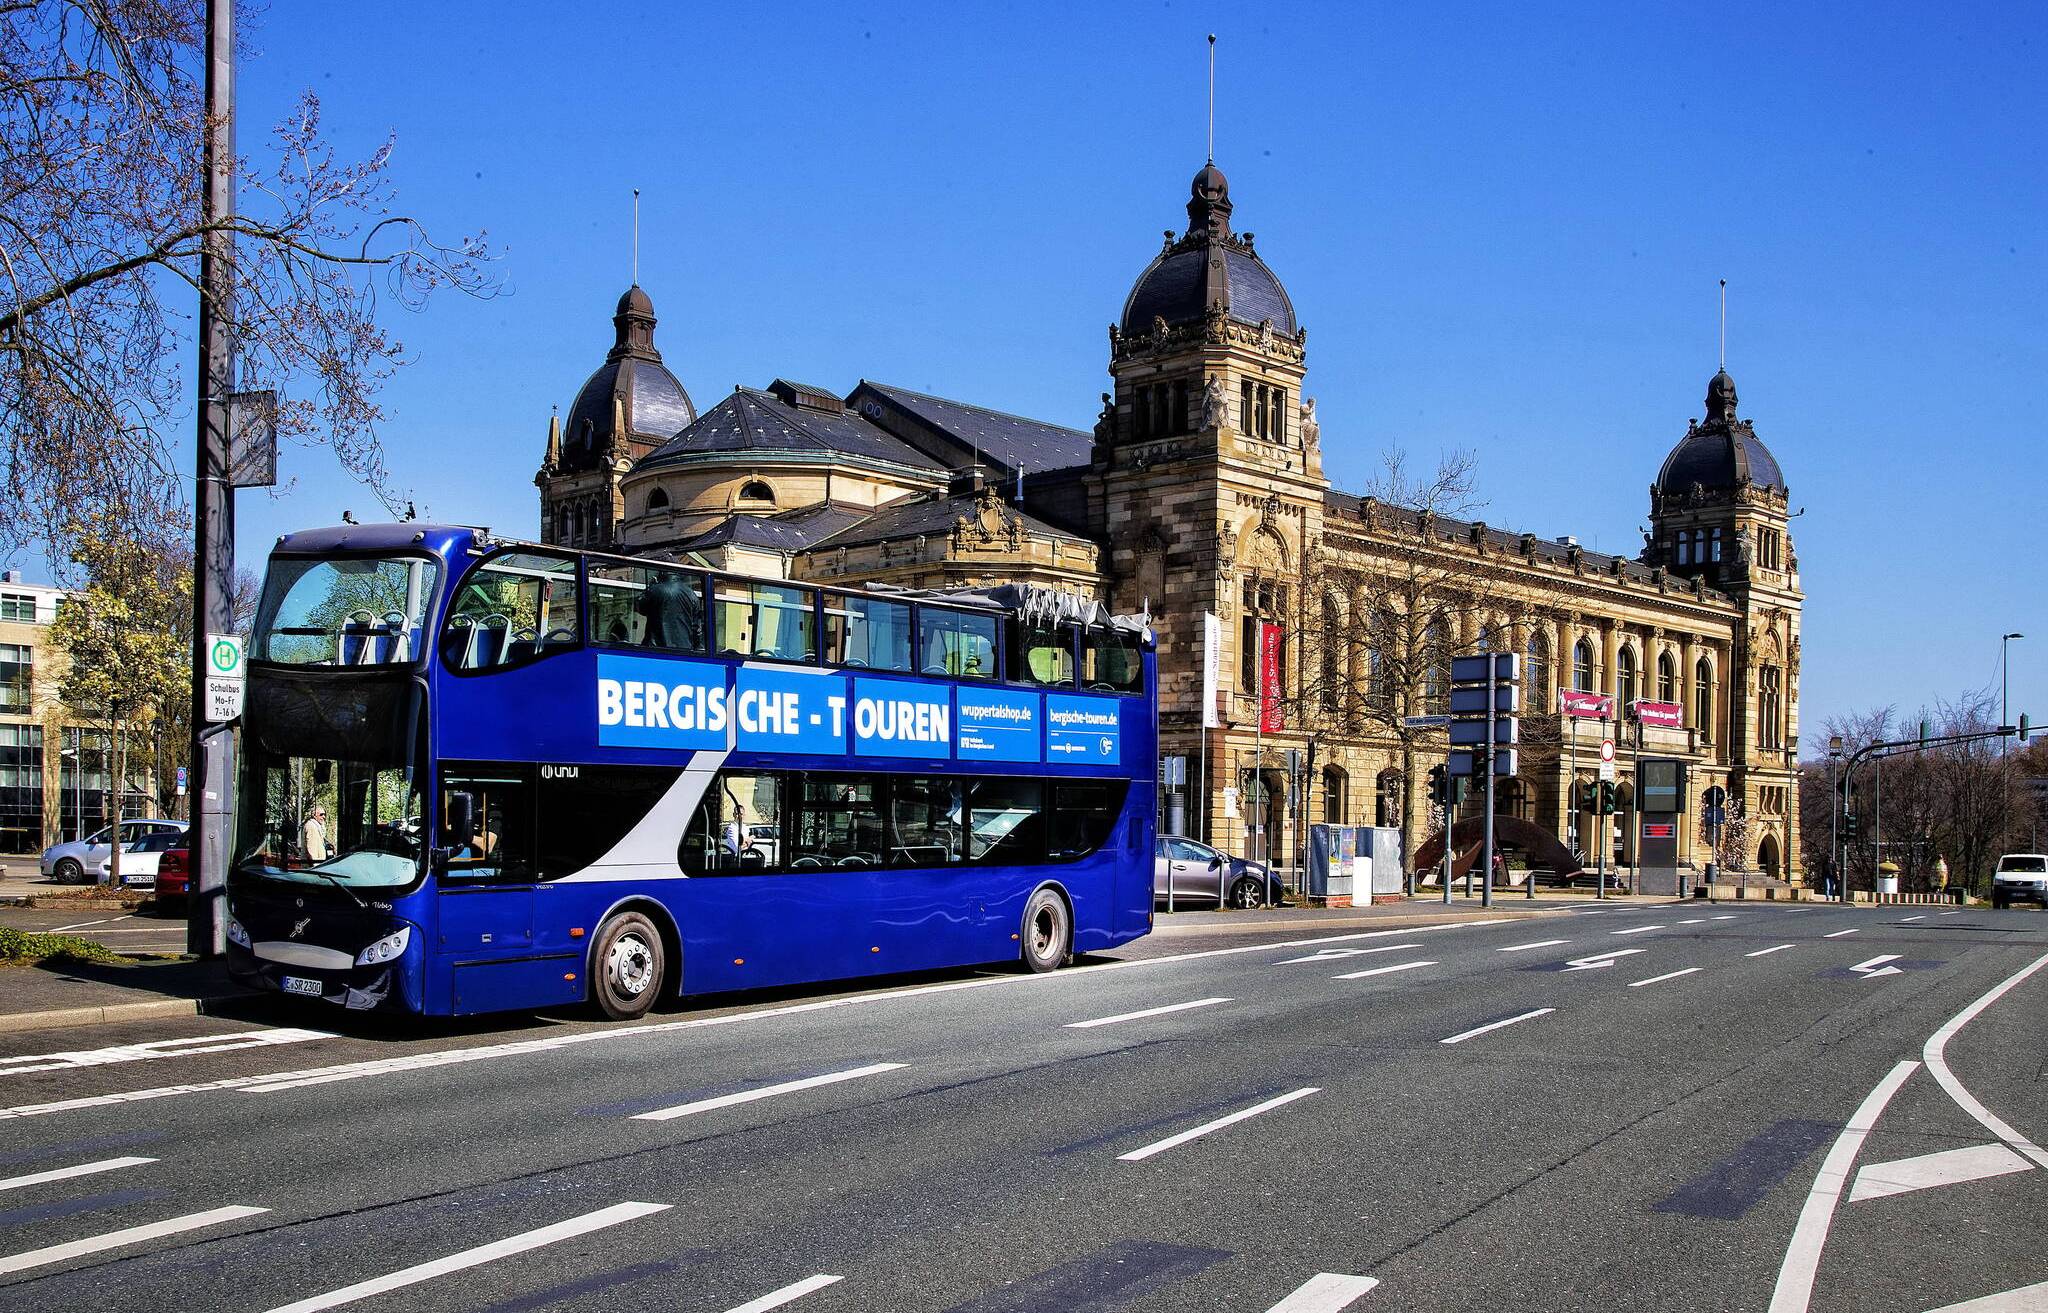  Der Doppeldeckerbus vor der Historischen Stadthalle in Wuppertal. 